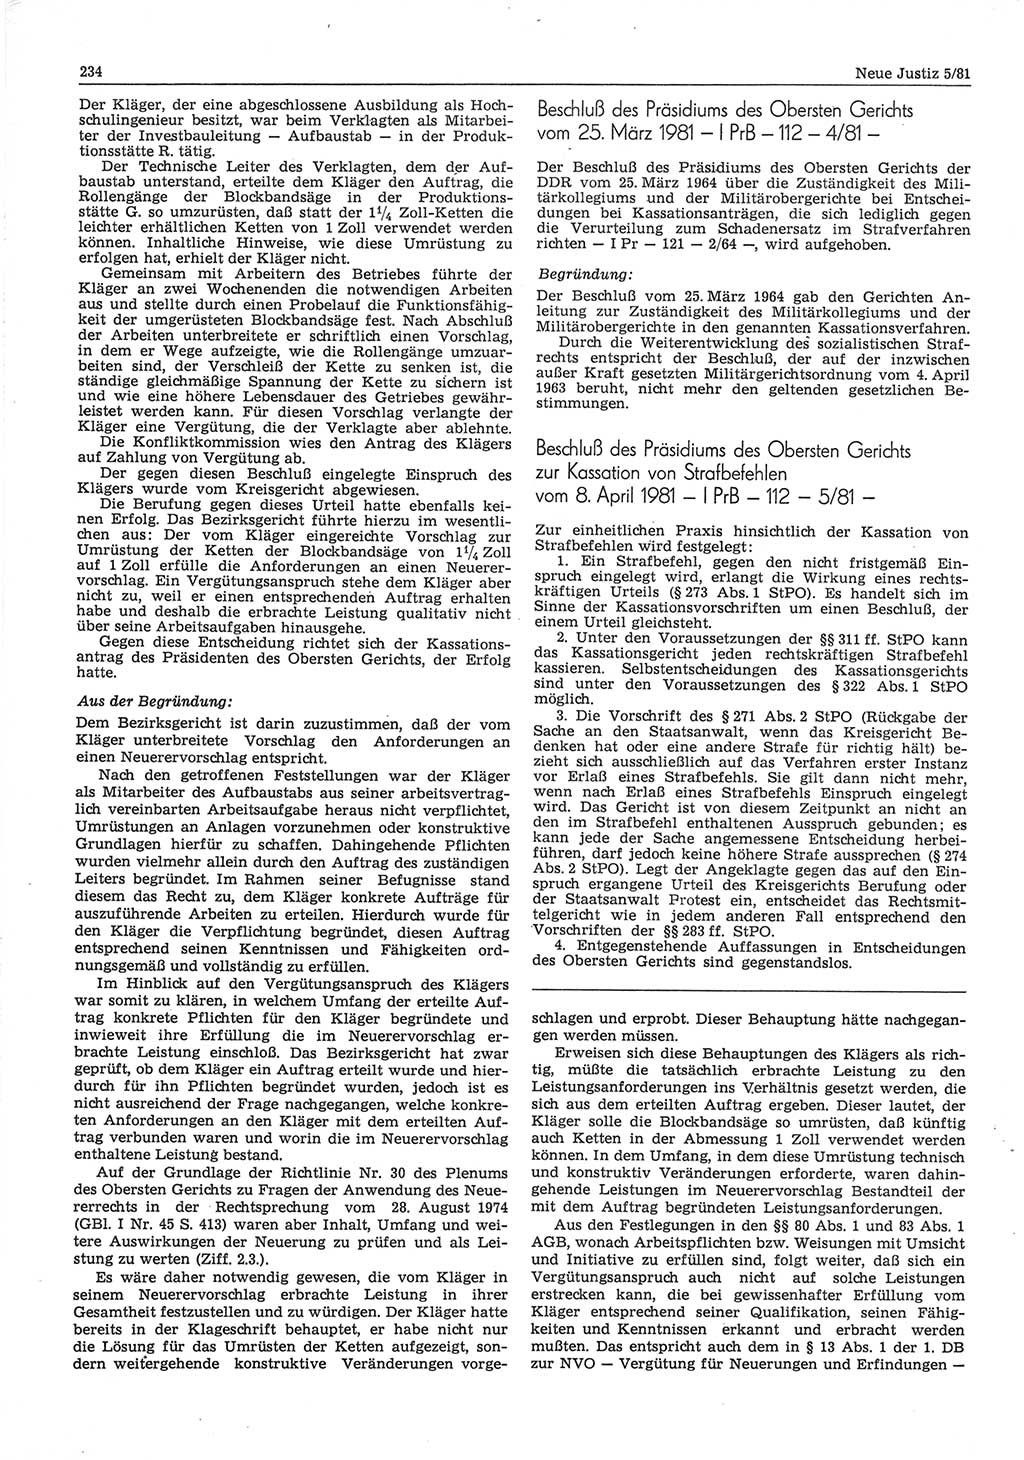 Neue Justiz (NJ), Zeitschrift für sozialistisches Recht und Gesetzlichkeit [Deutsche Demokratische Republik (DDR)], 35. Jahrgang 1981, Seite 234 (NJ DDR 1981, S. 234)